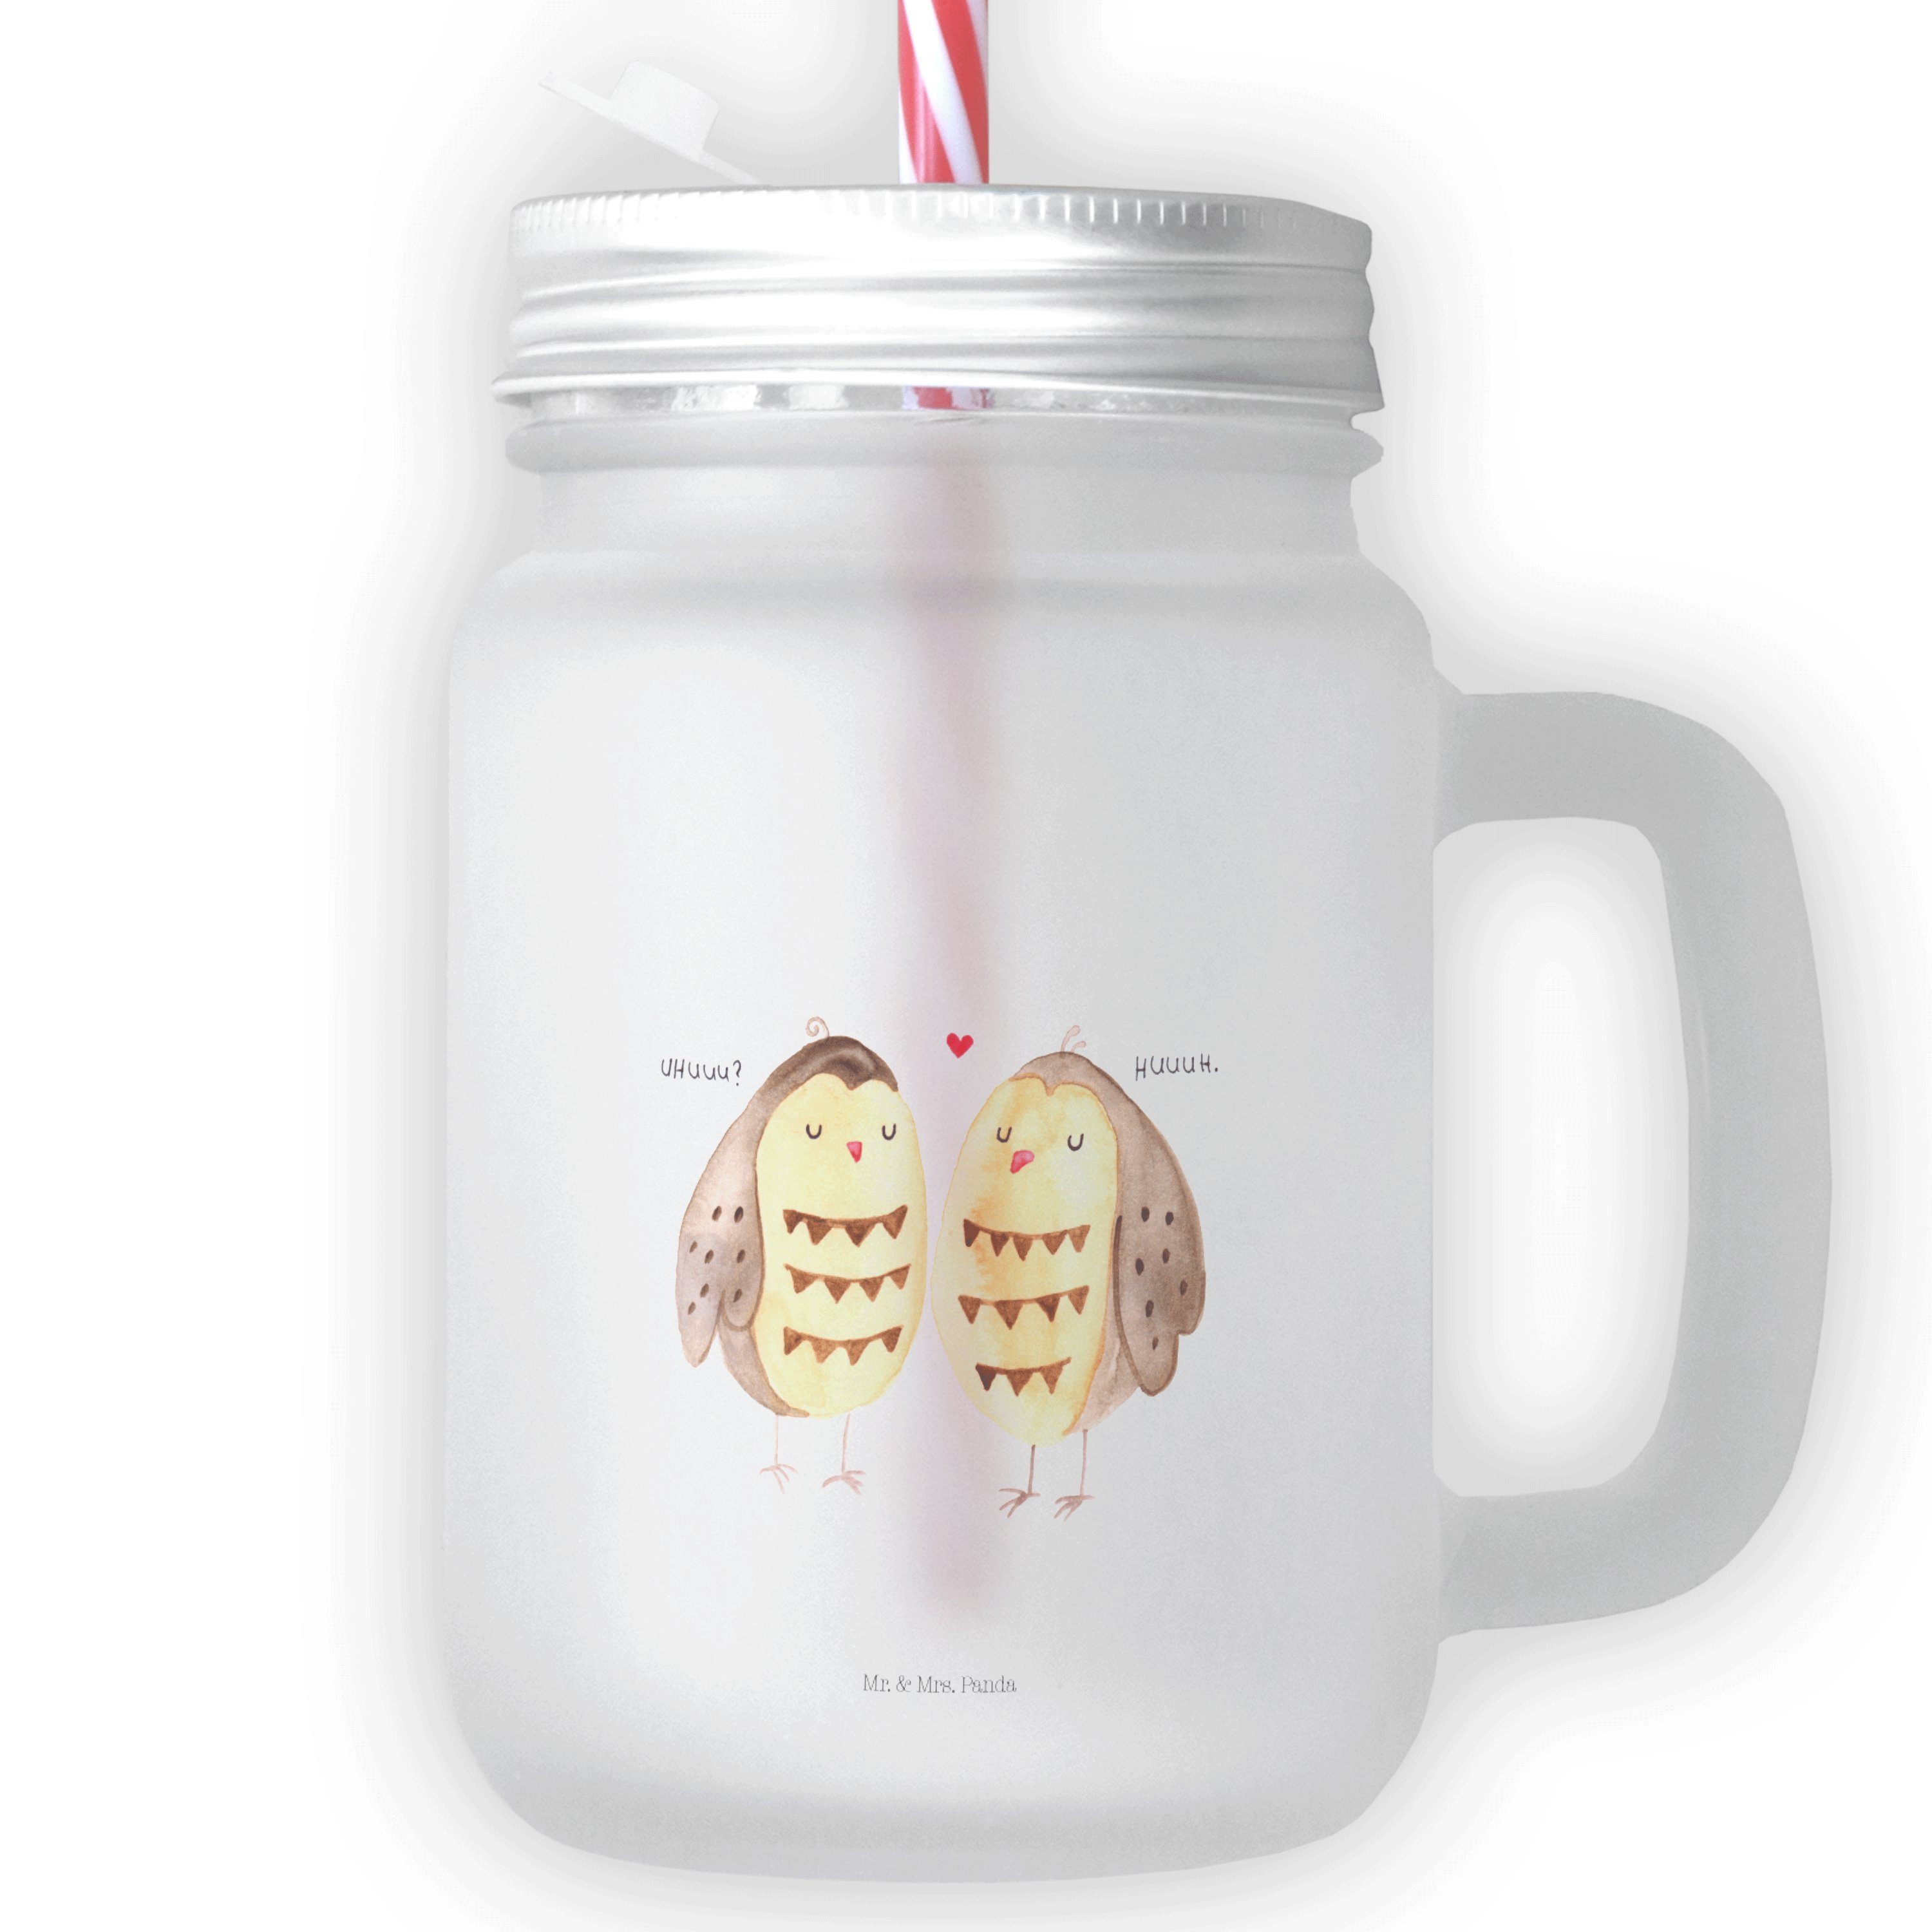 Mr. & Mrs. Panda Cocktailglas Eulen Liebe - Transparent - Geschenk, Paar, Owl, Sommerglas, Einmachg, Premium Glas, Mit süßen Motiven